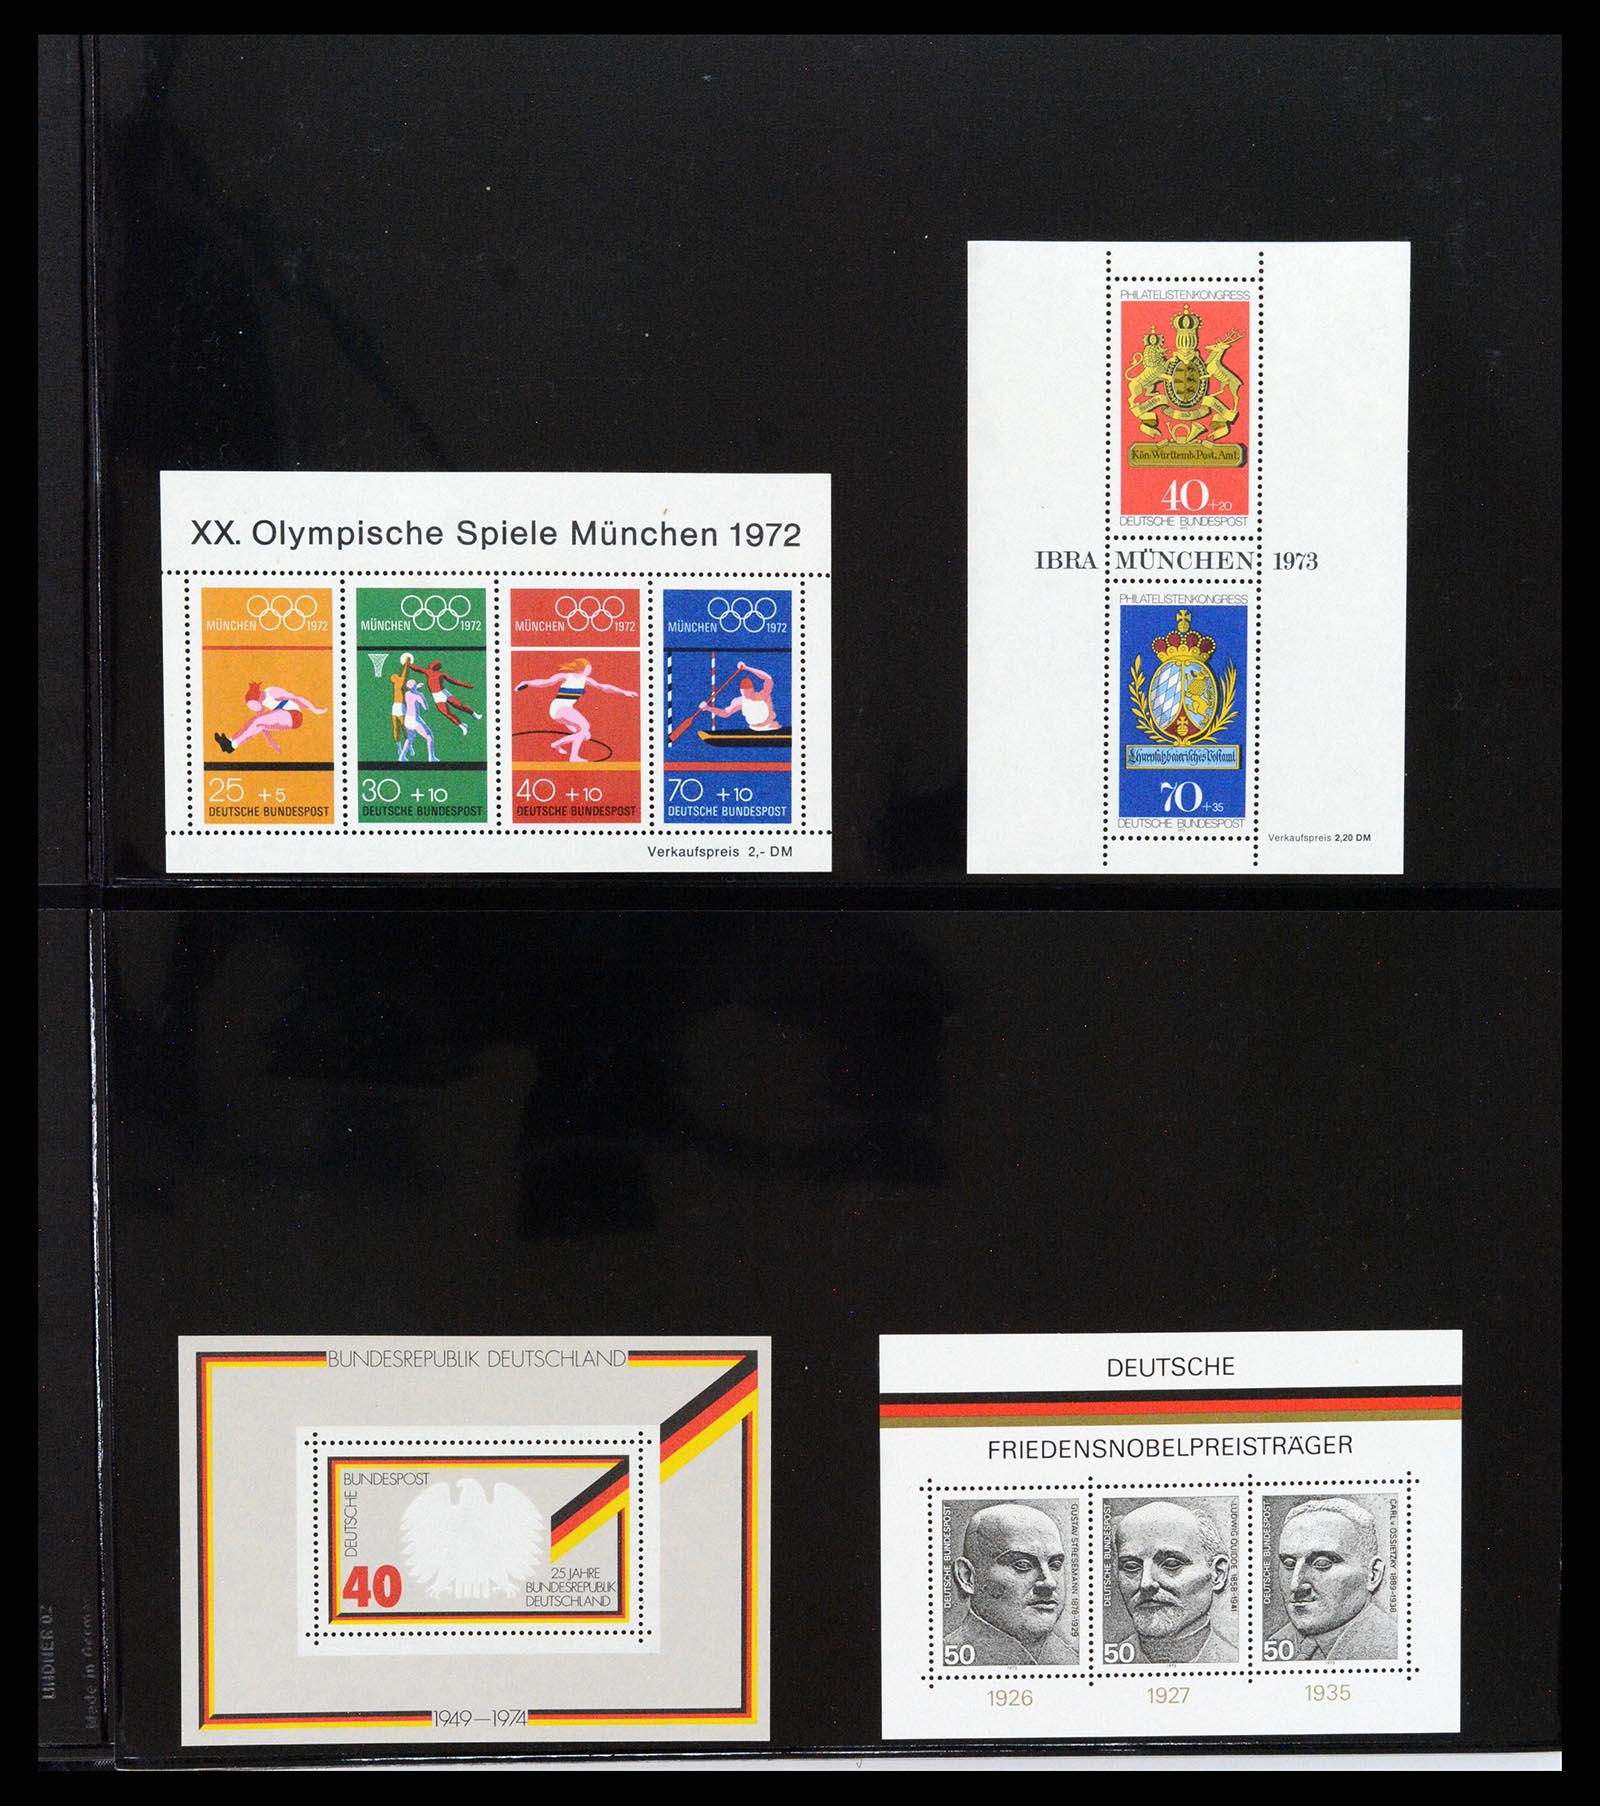 37345 034 - Stamp collection 37345 European countries souvenir sheets.